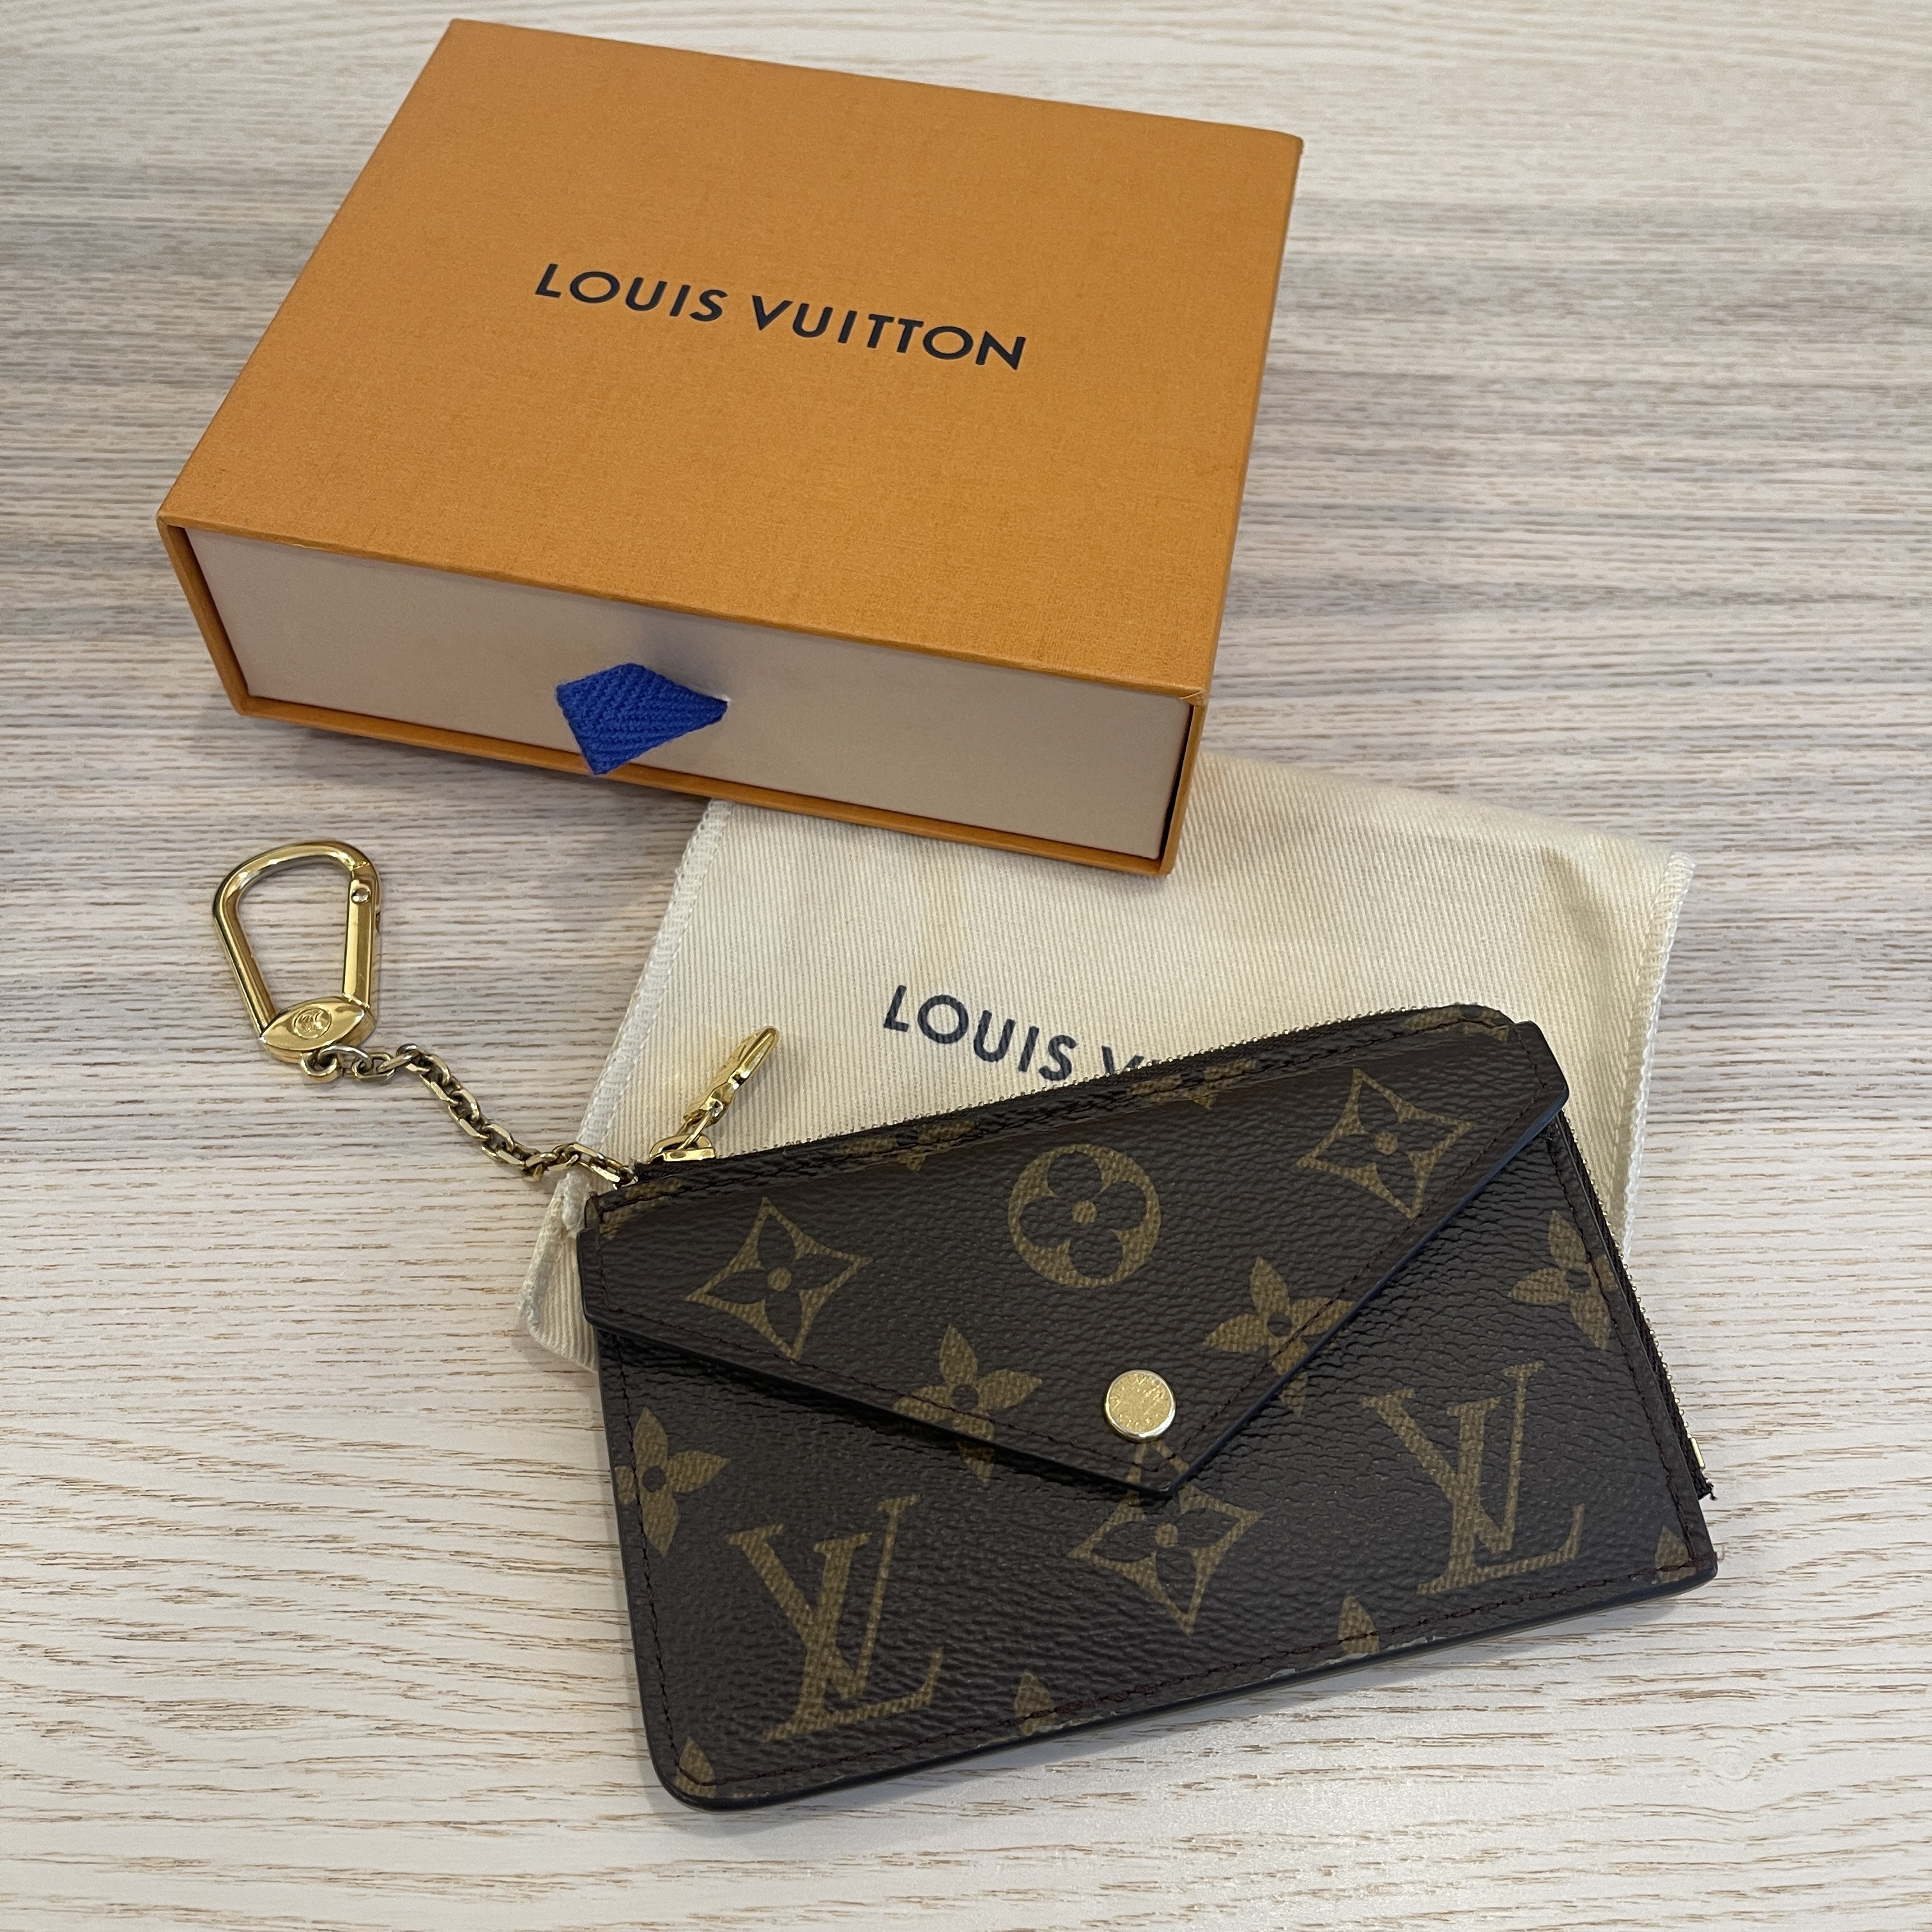 New Louis Vuitton Recto Verso Monogram Card Holder